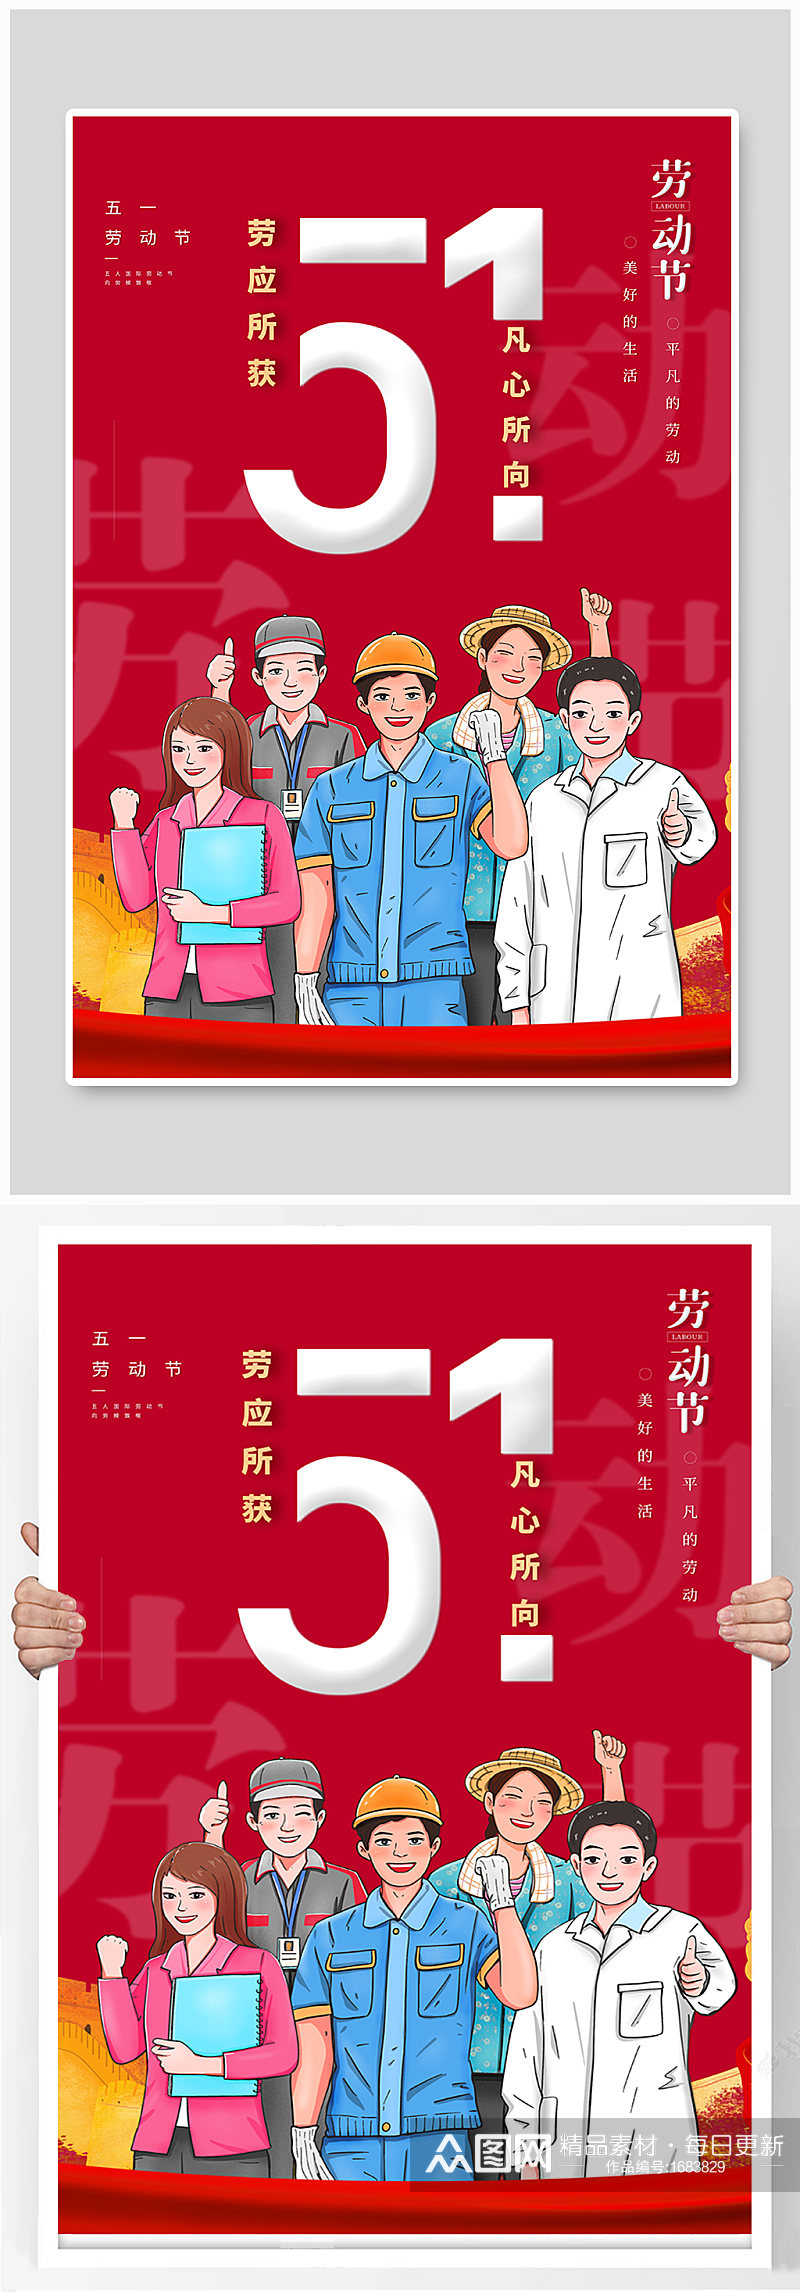 红色插画风51劳动节宣传海报素材